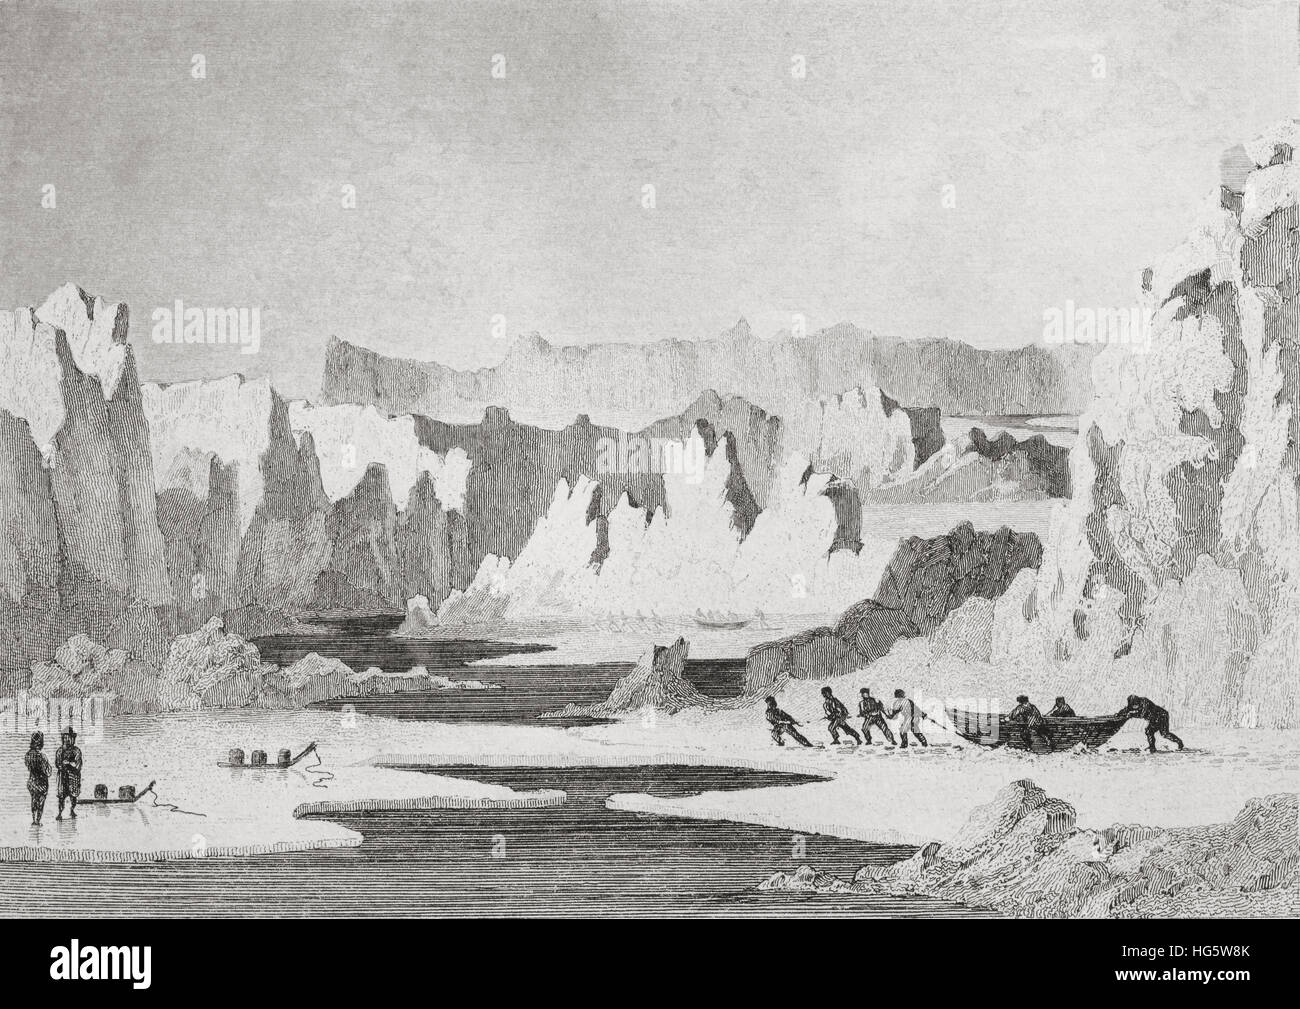 Metodo per viaggiare attraverso le cime ghiacciate, iceberg. regioni polari. Xix secolo incisione in acciaio da gaucherel e lemaitre ha. Foto Stock